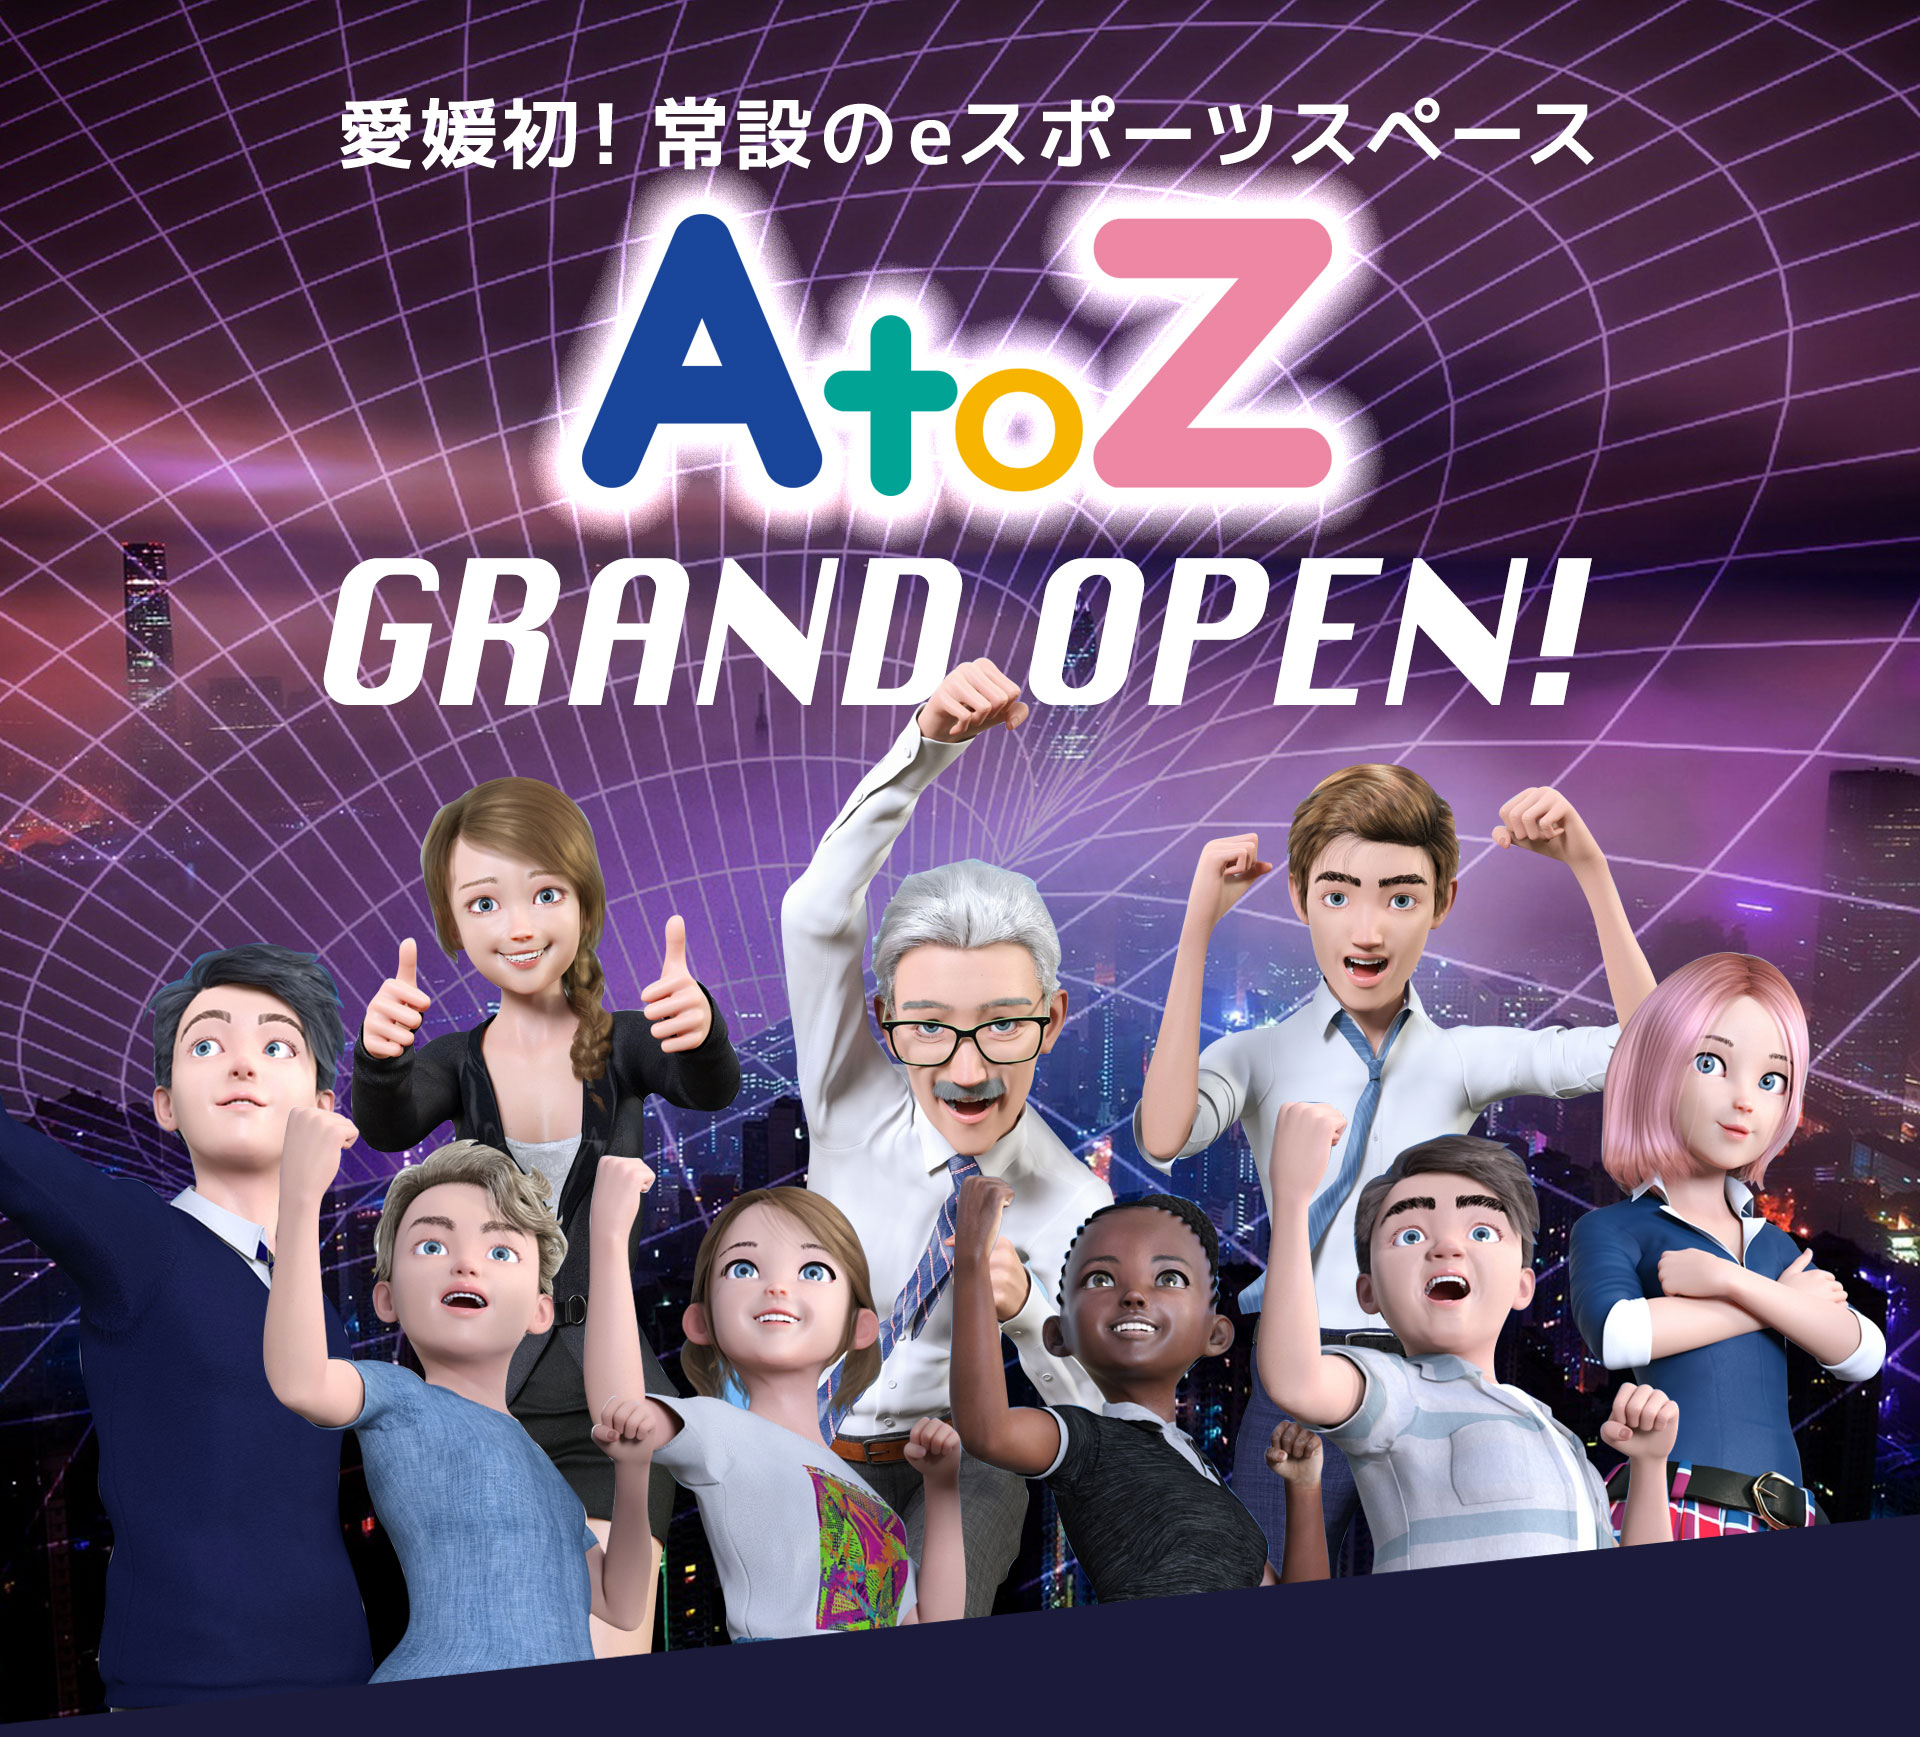 【AtoZ】愛媛初の常設 eスポーツスペース。愛媛県松山市にオープン